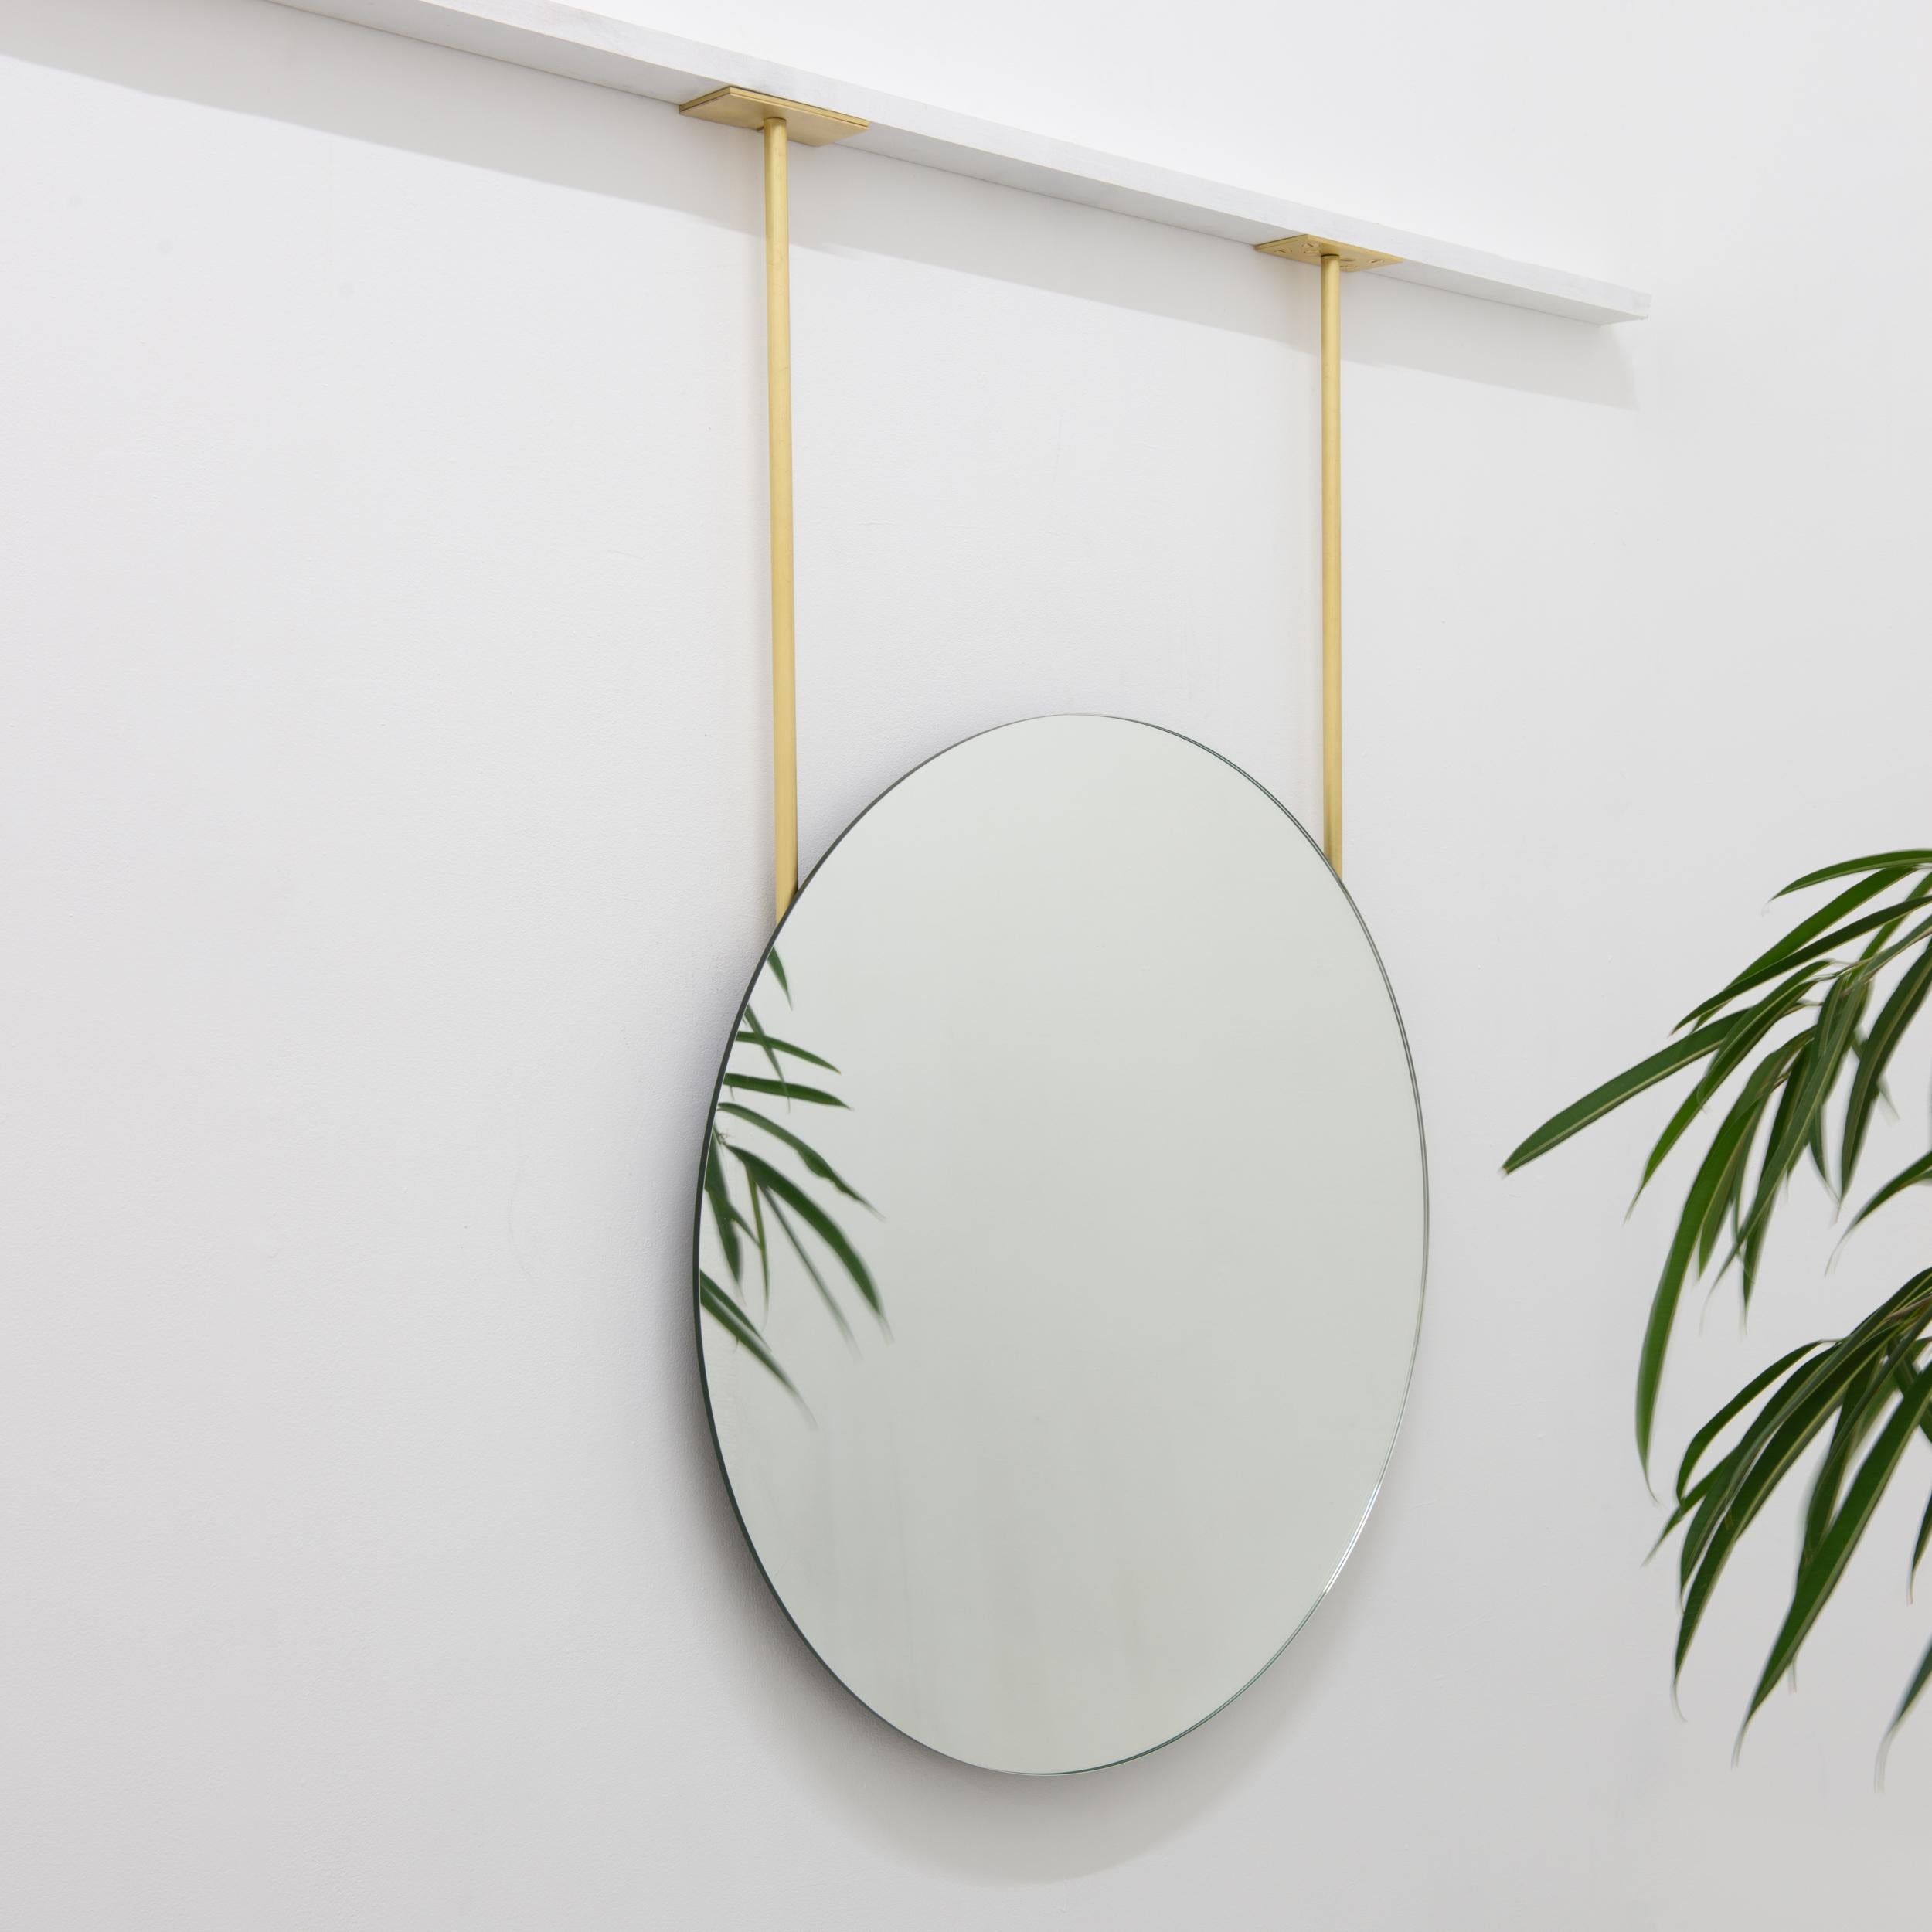 Miroir rond sans cadre, exquis et minimaliste, suspendu au plafond.

600mm (23.62